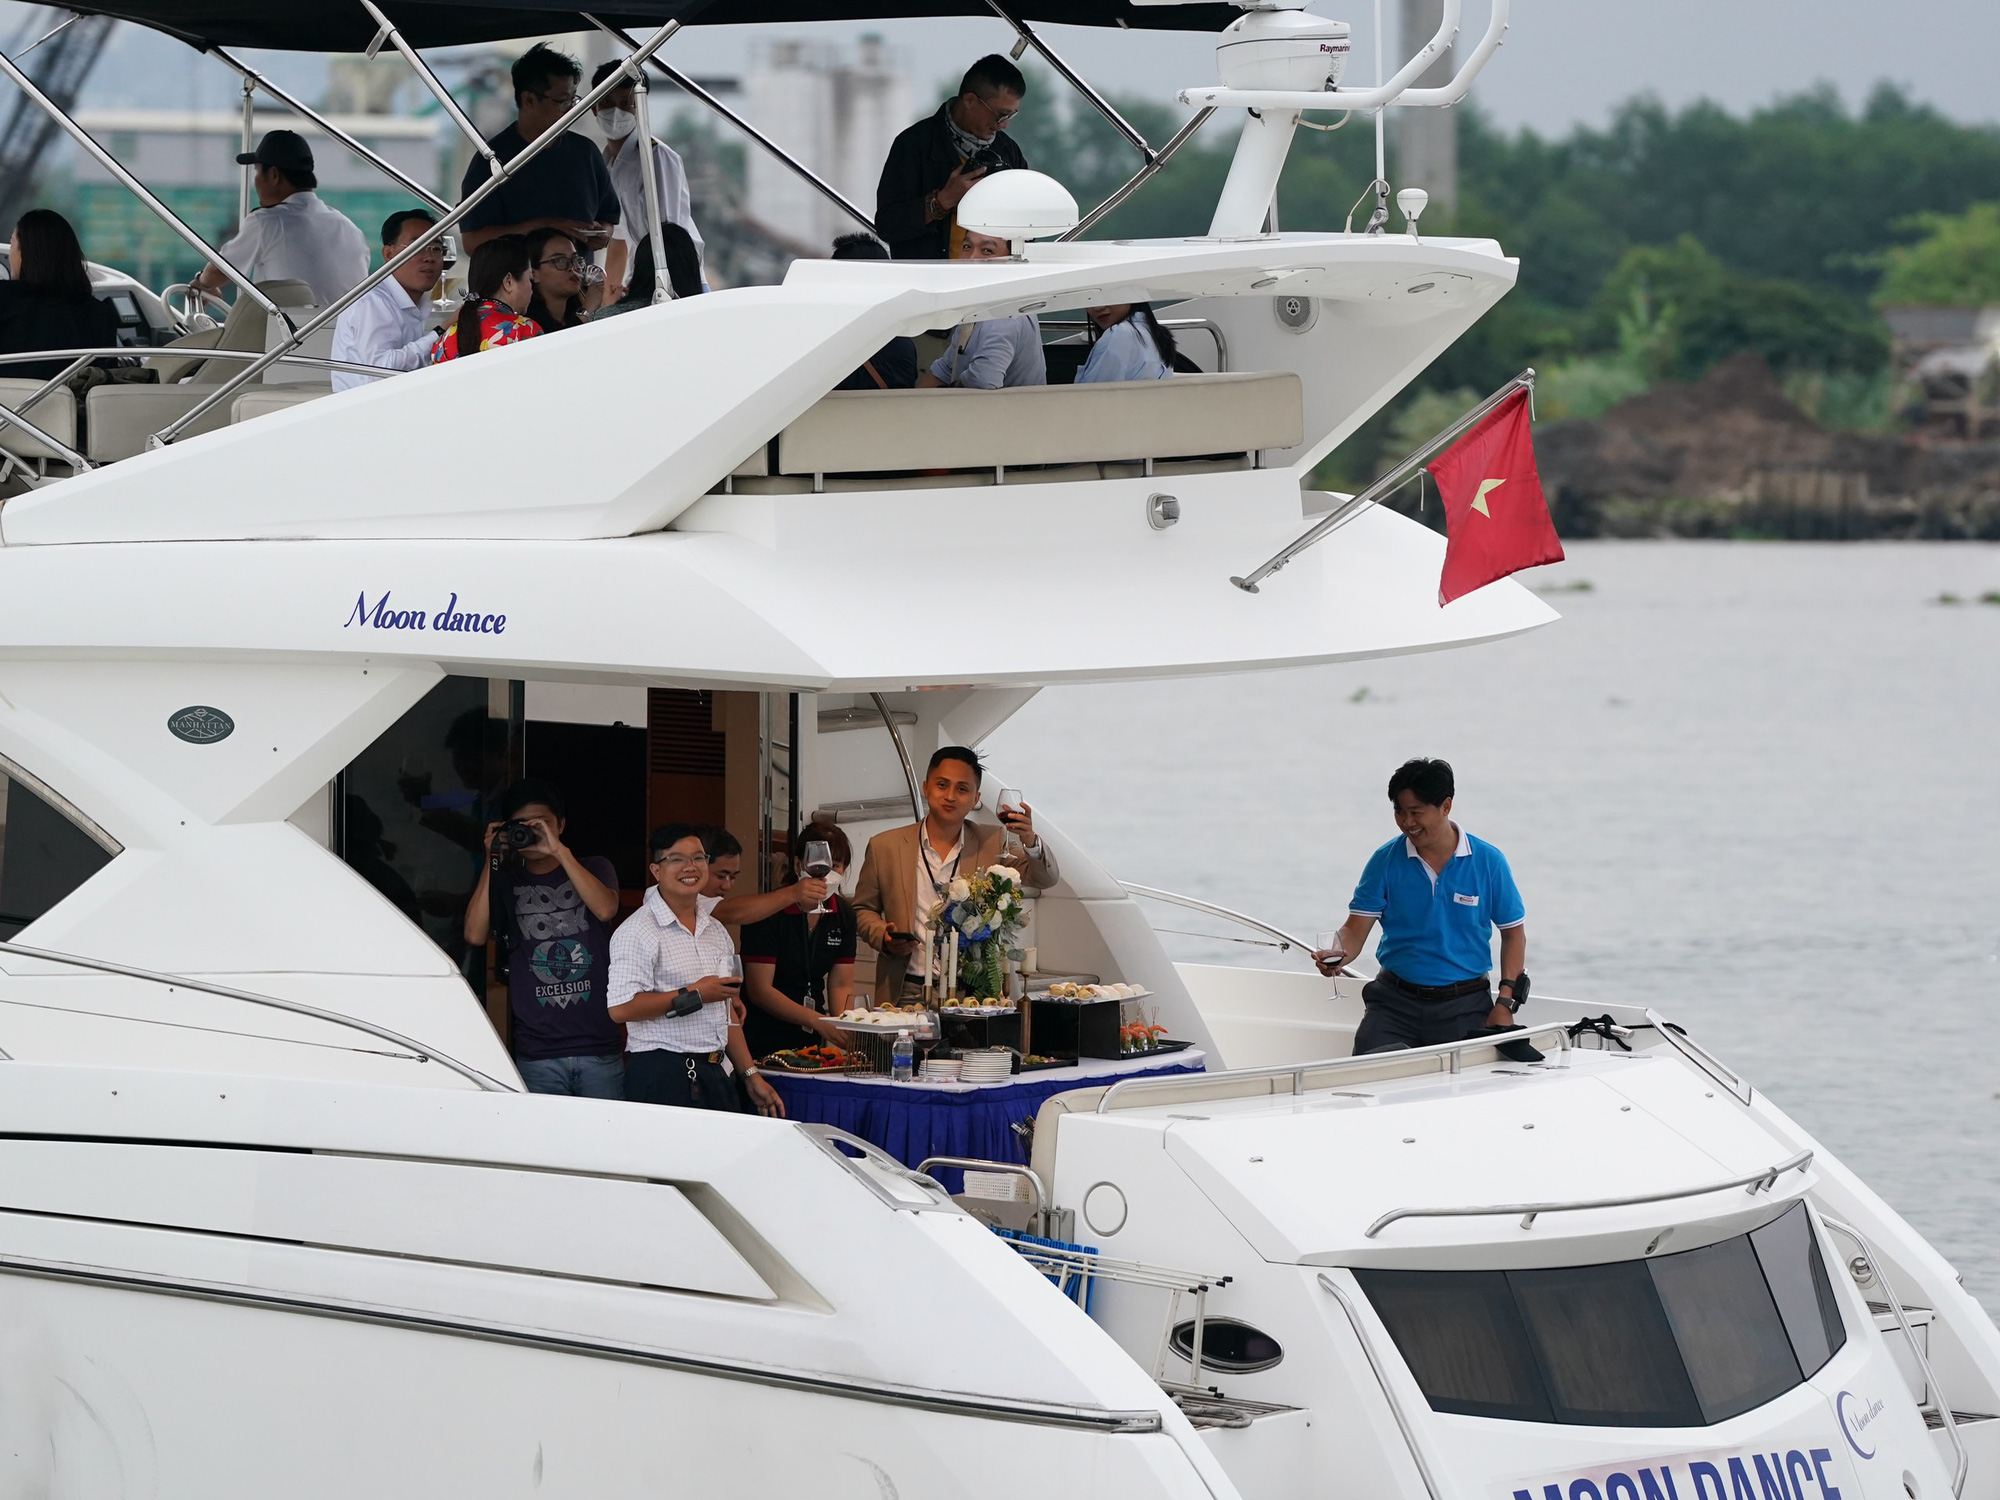 Tour du thuyền trên sông Sài Gòn: 5-10 triệu/người đi trong 3 tiếng đồng hồ - Ảnh 2.